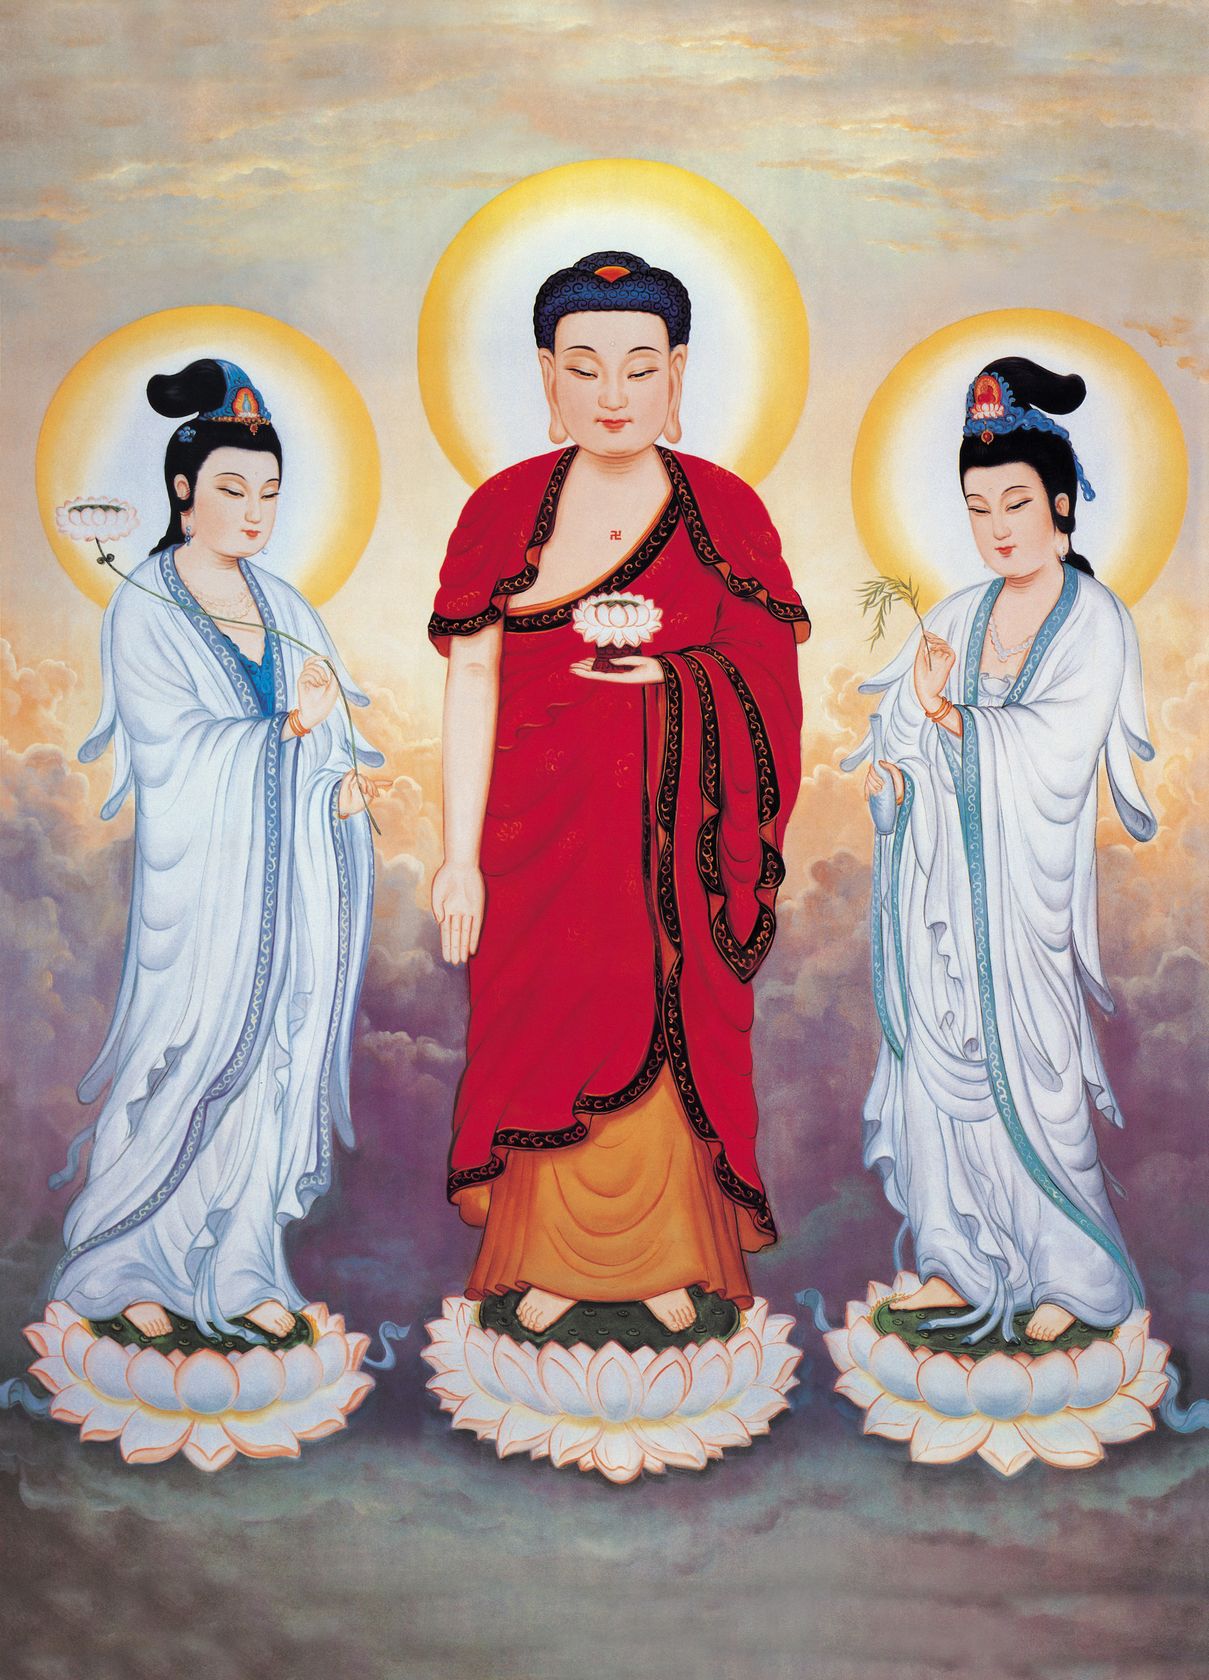 多張大張阿彌陀佛和西方三聖像－－台灣學佛網